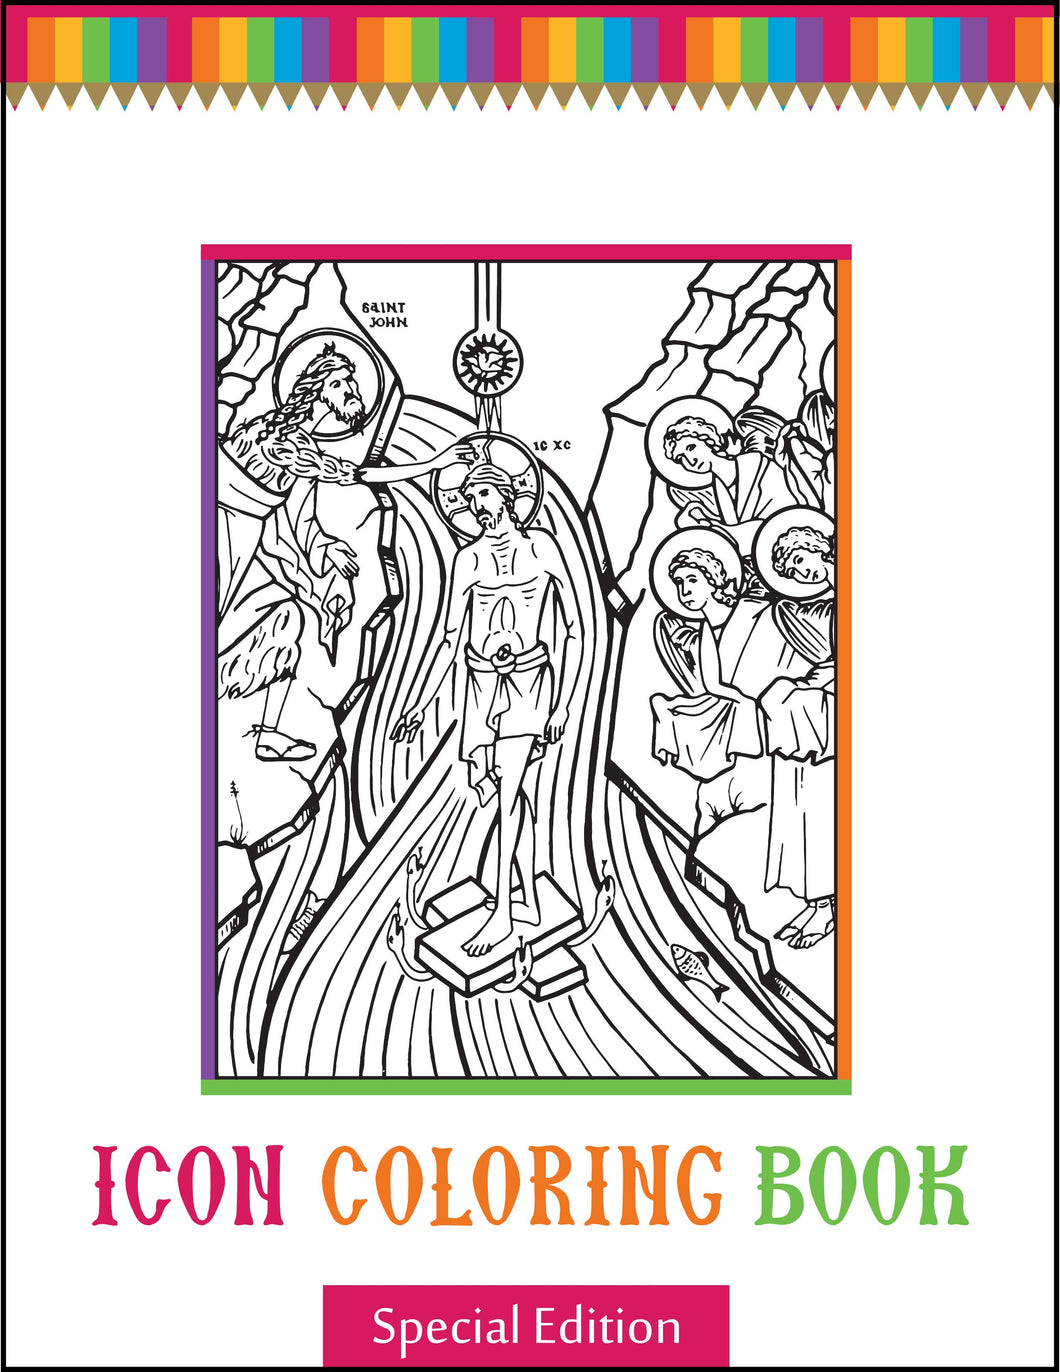 Special Edition Icon Coloring Book